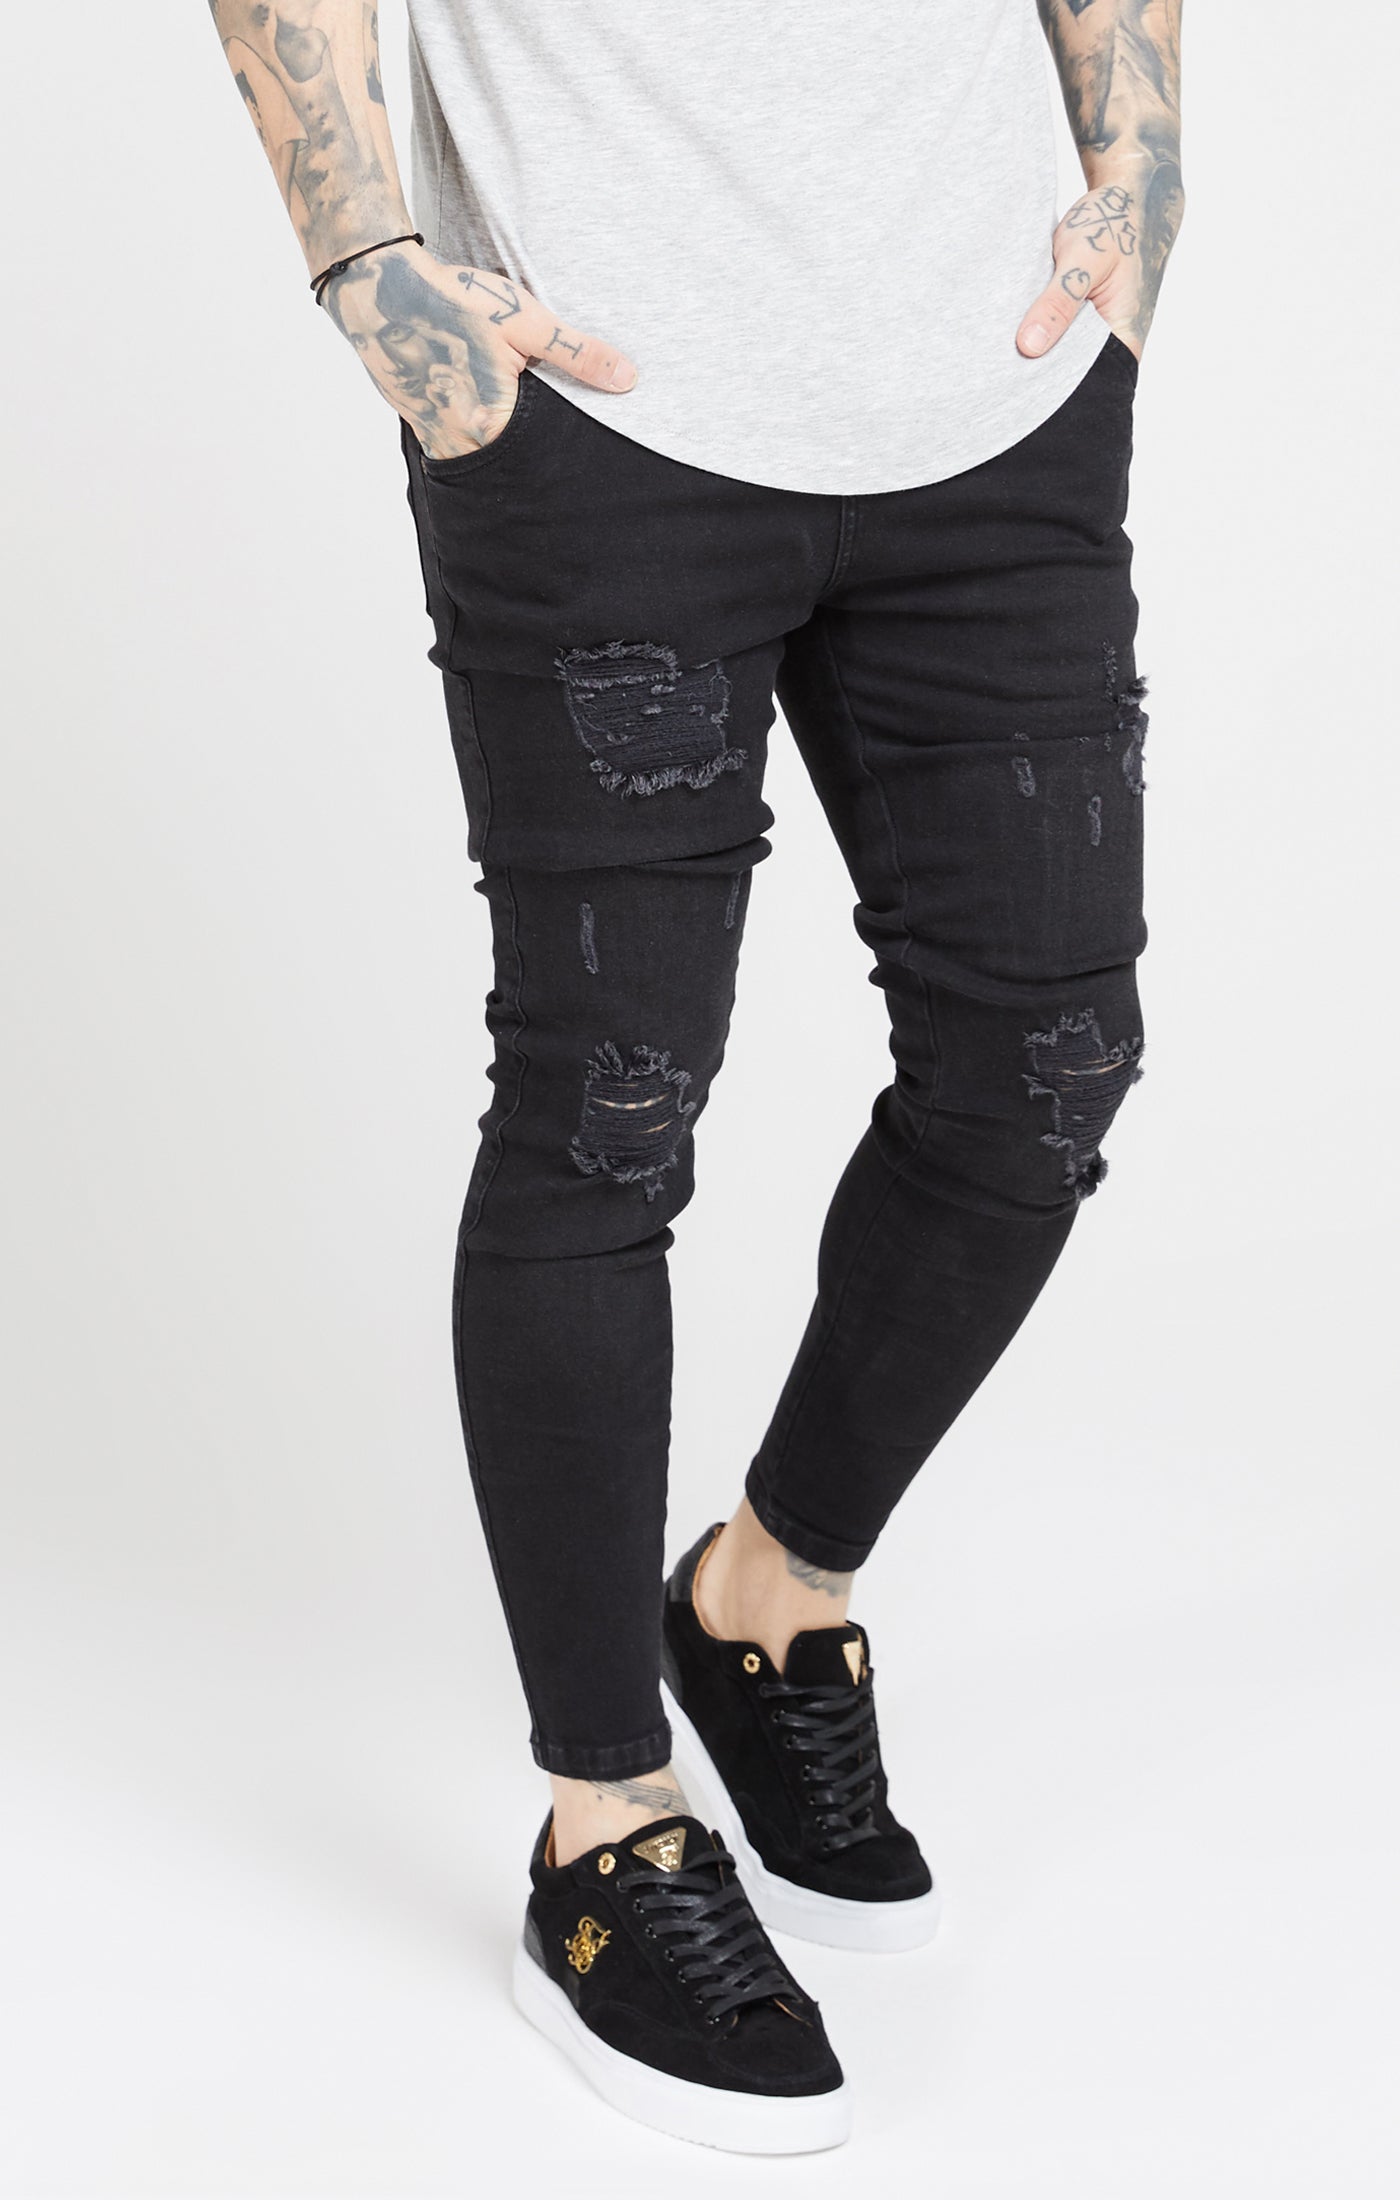 Essential Distressed Skinny Jean in Black Jeans SikSilk   